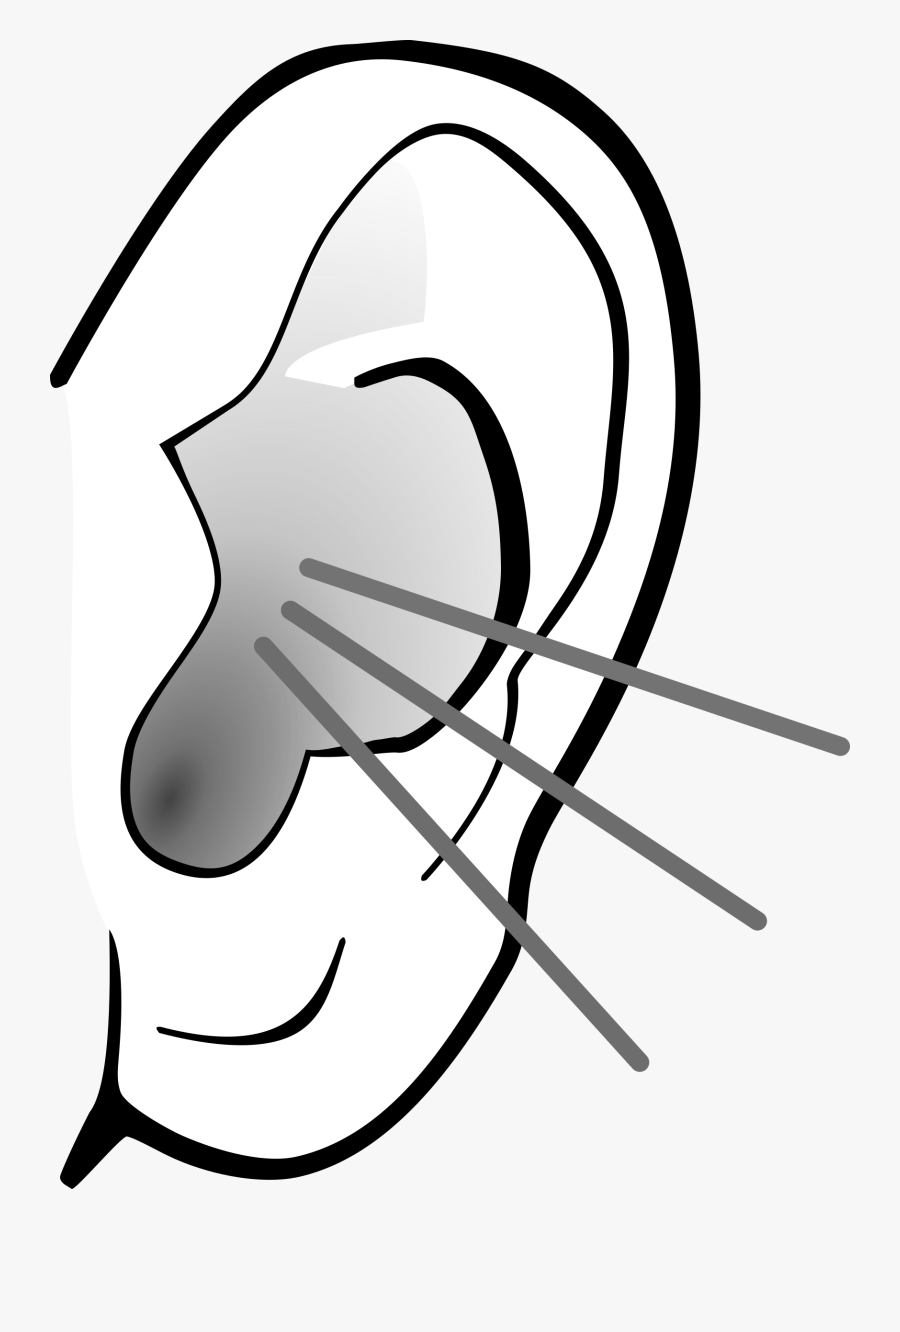 Clipart - Big Ears Cartoon, Transparent Clipart